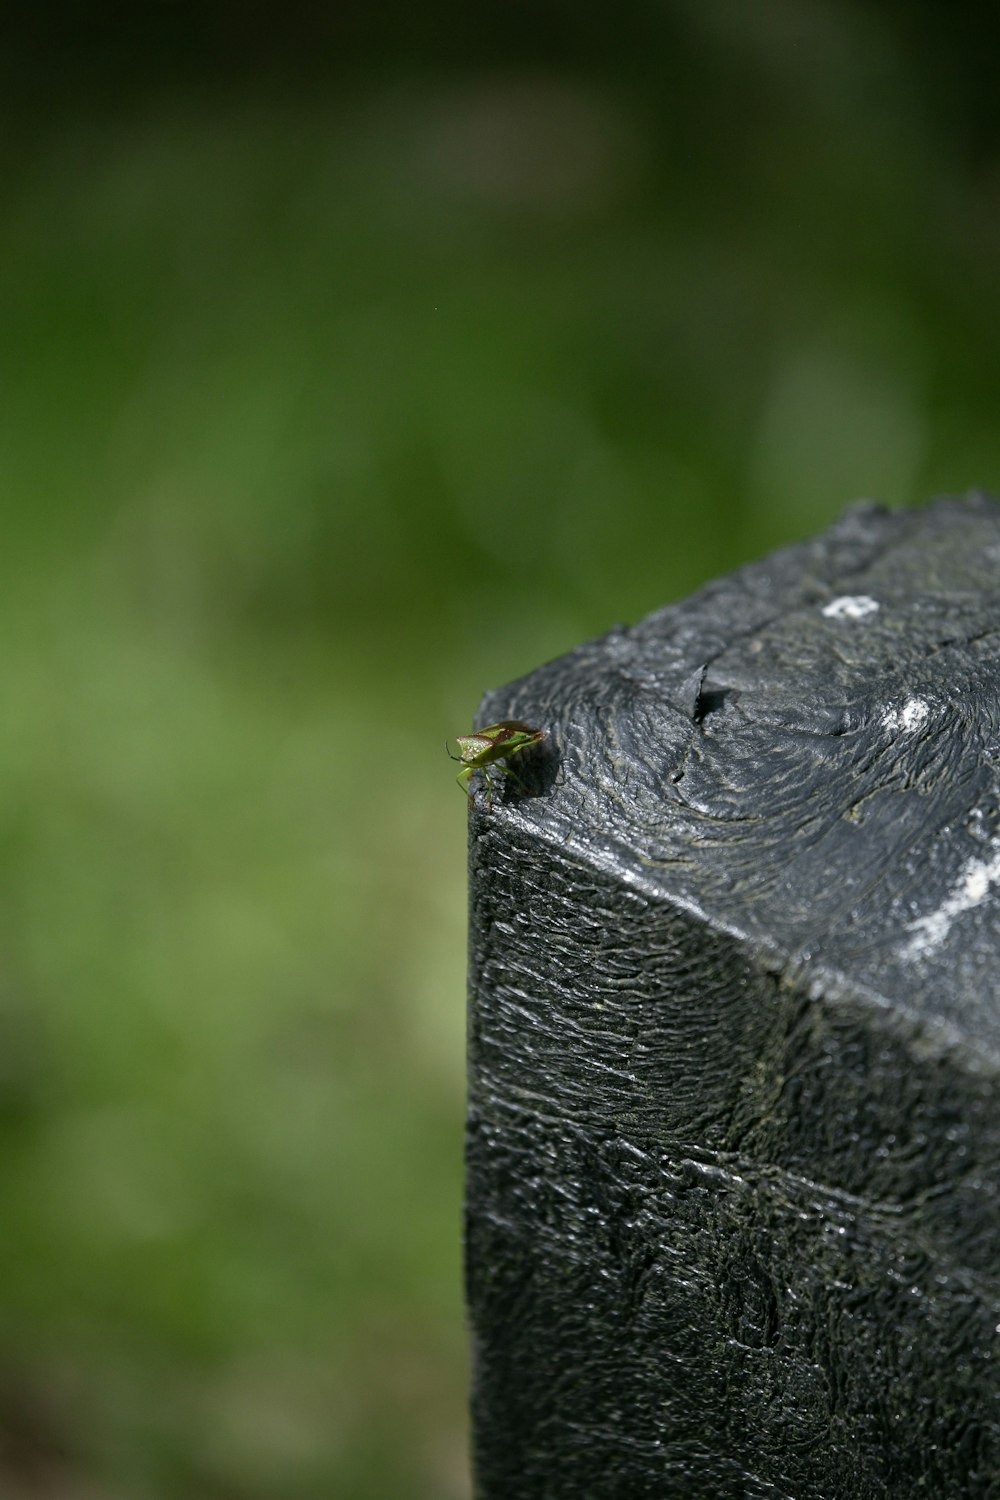 a close up of a piece of wood with a bug on it